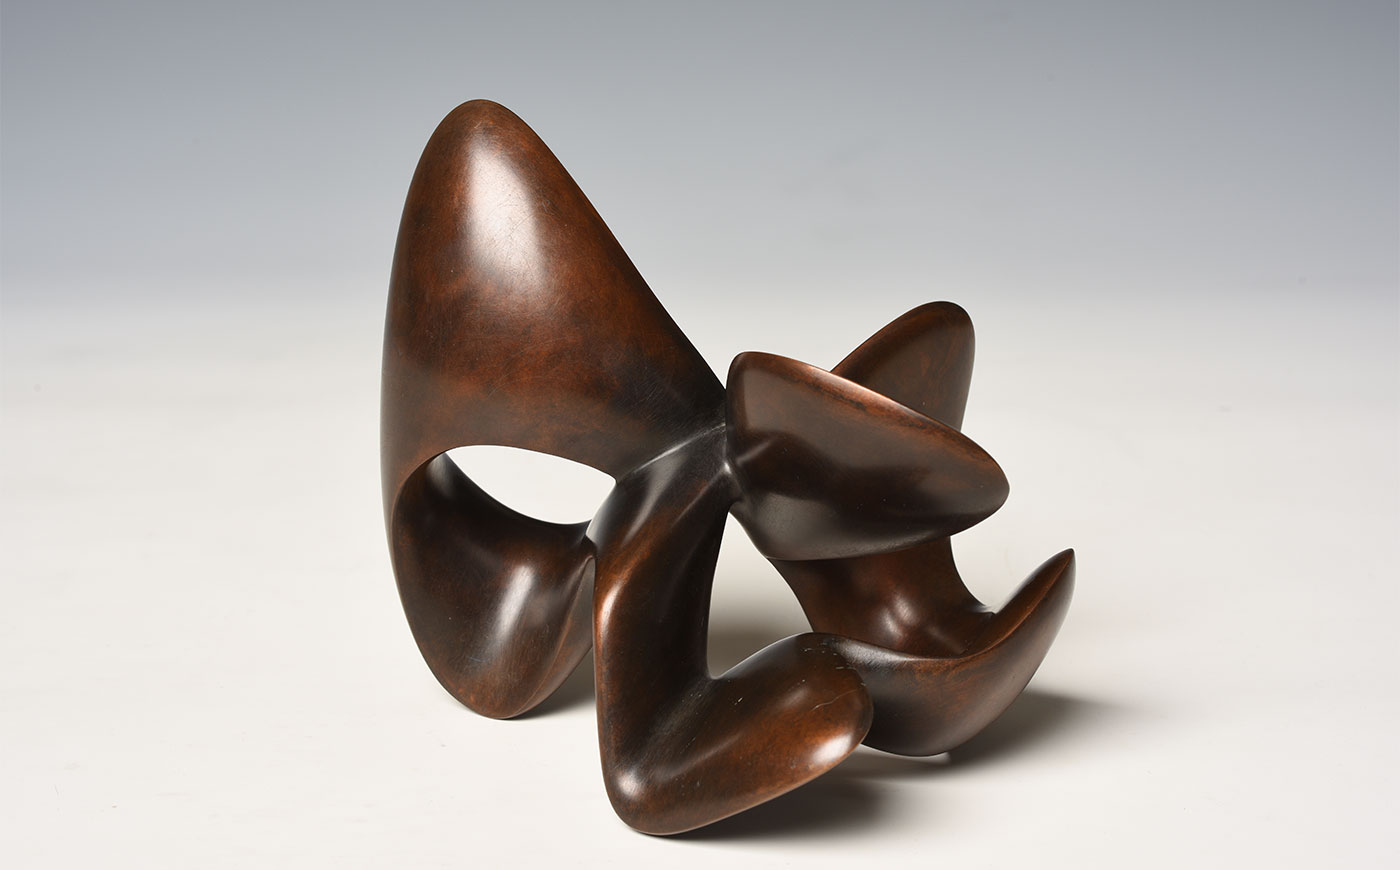 Richard Erdman abstract modern bronze sculpture